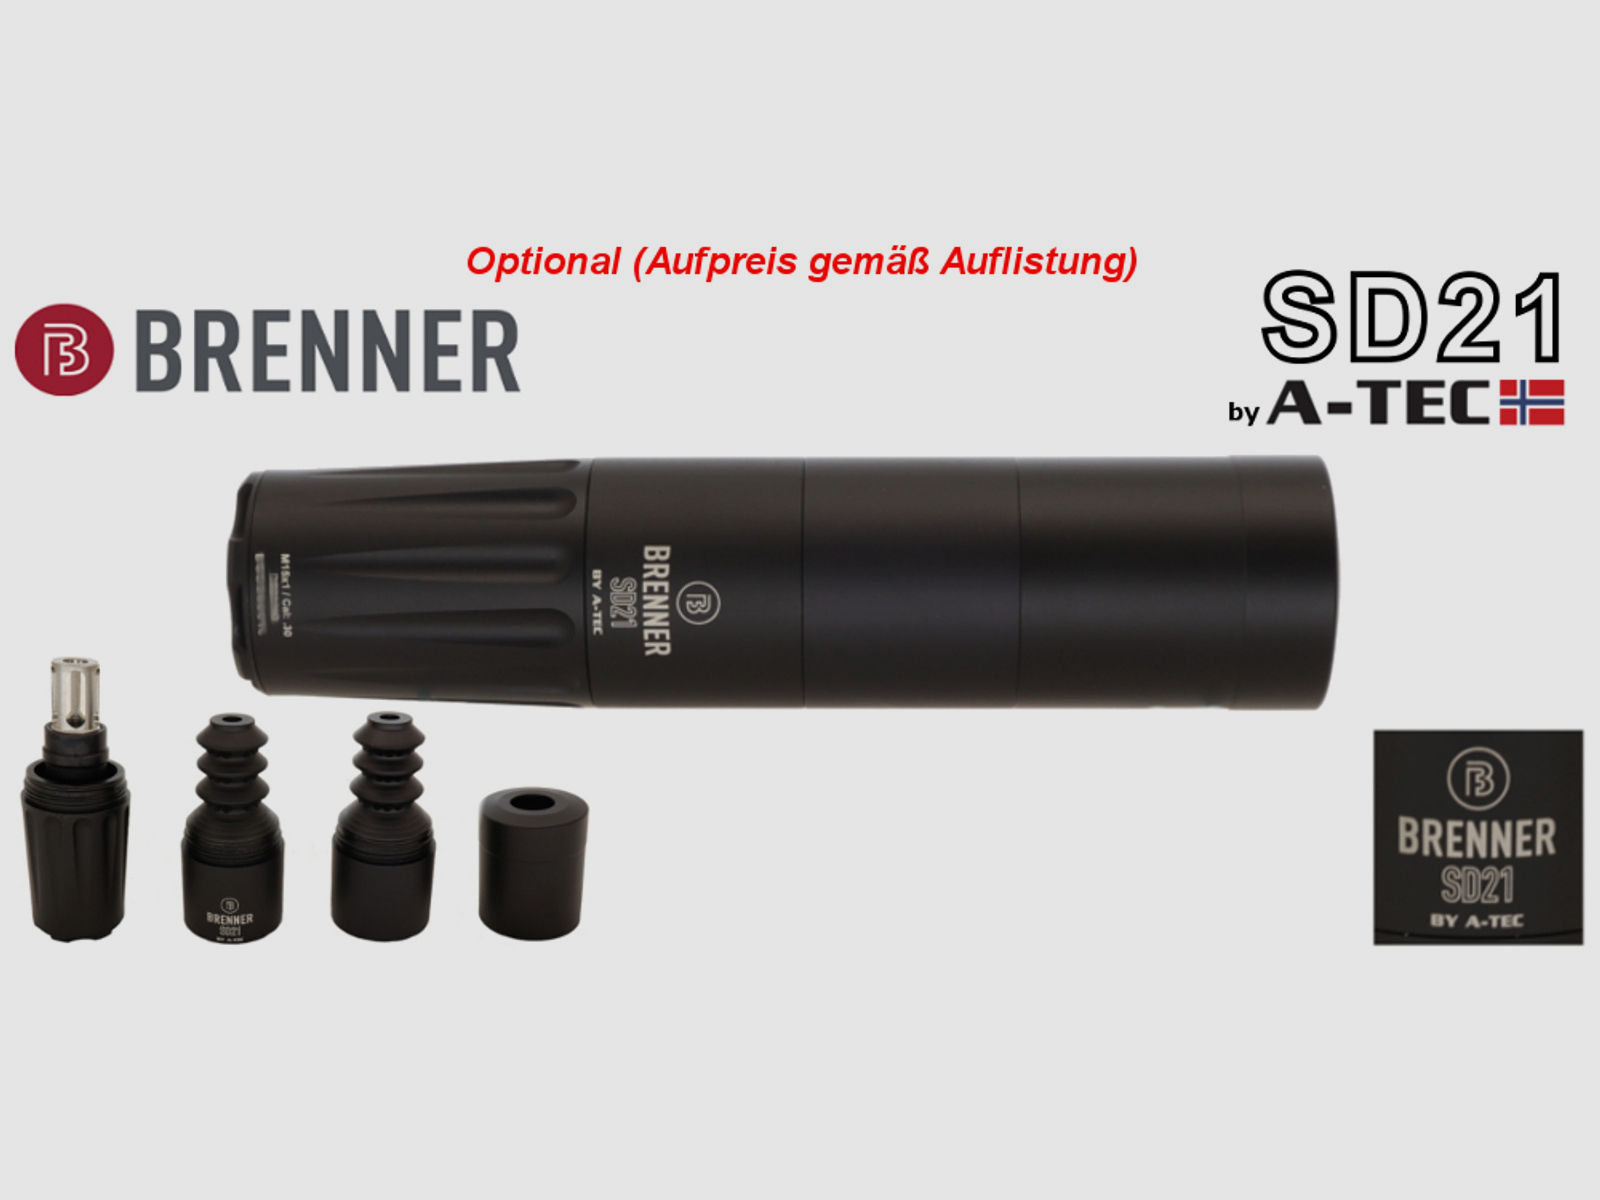 Brenner Komplettpaket, auf Lager: Brenner BR 20 Polymer mit Leica Amplus fertig montiert (Best.Nr.: BR20PP3) Finanzierung möglich